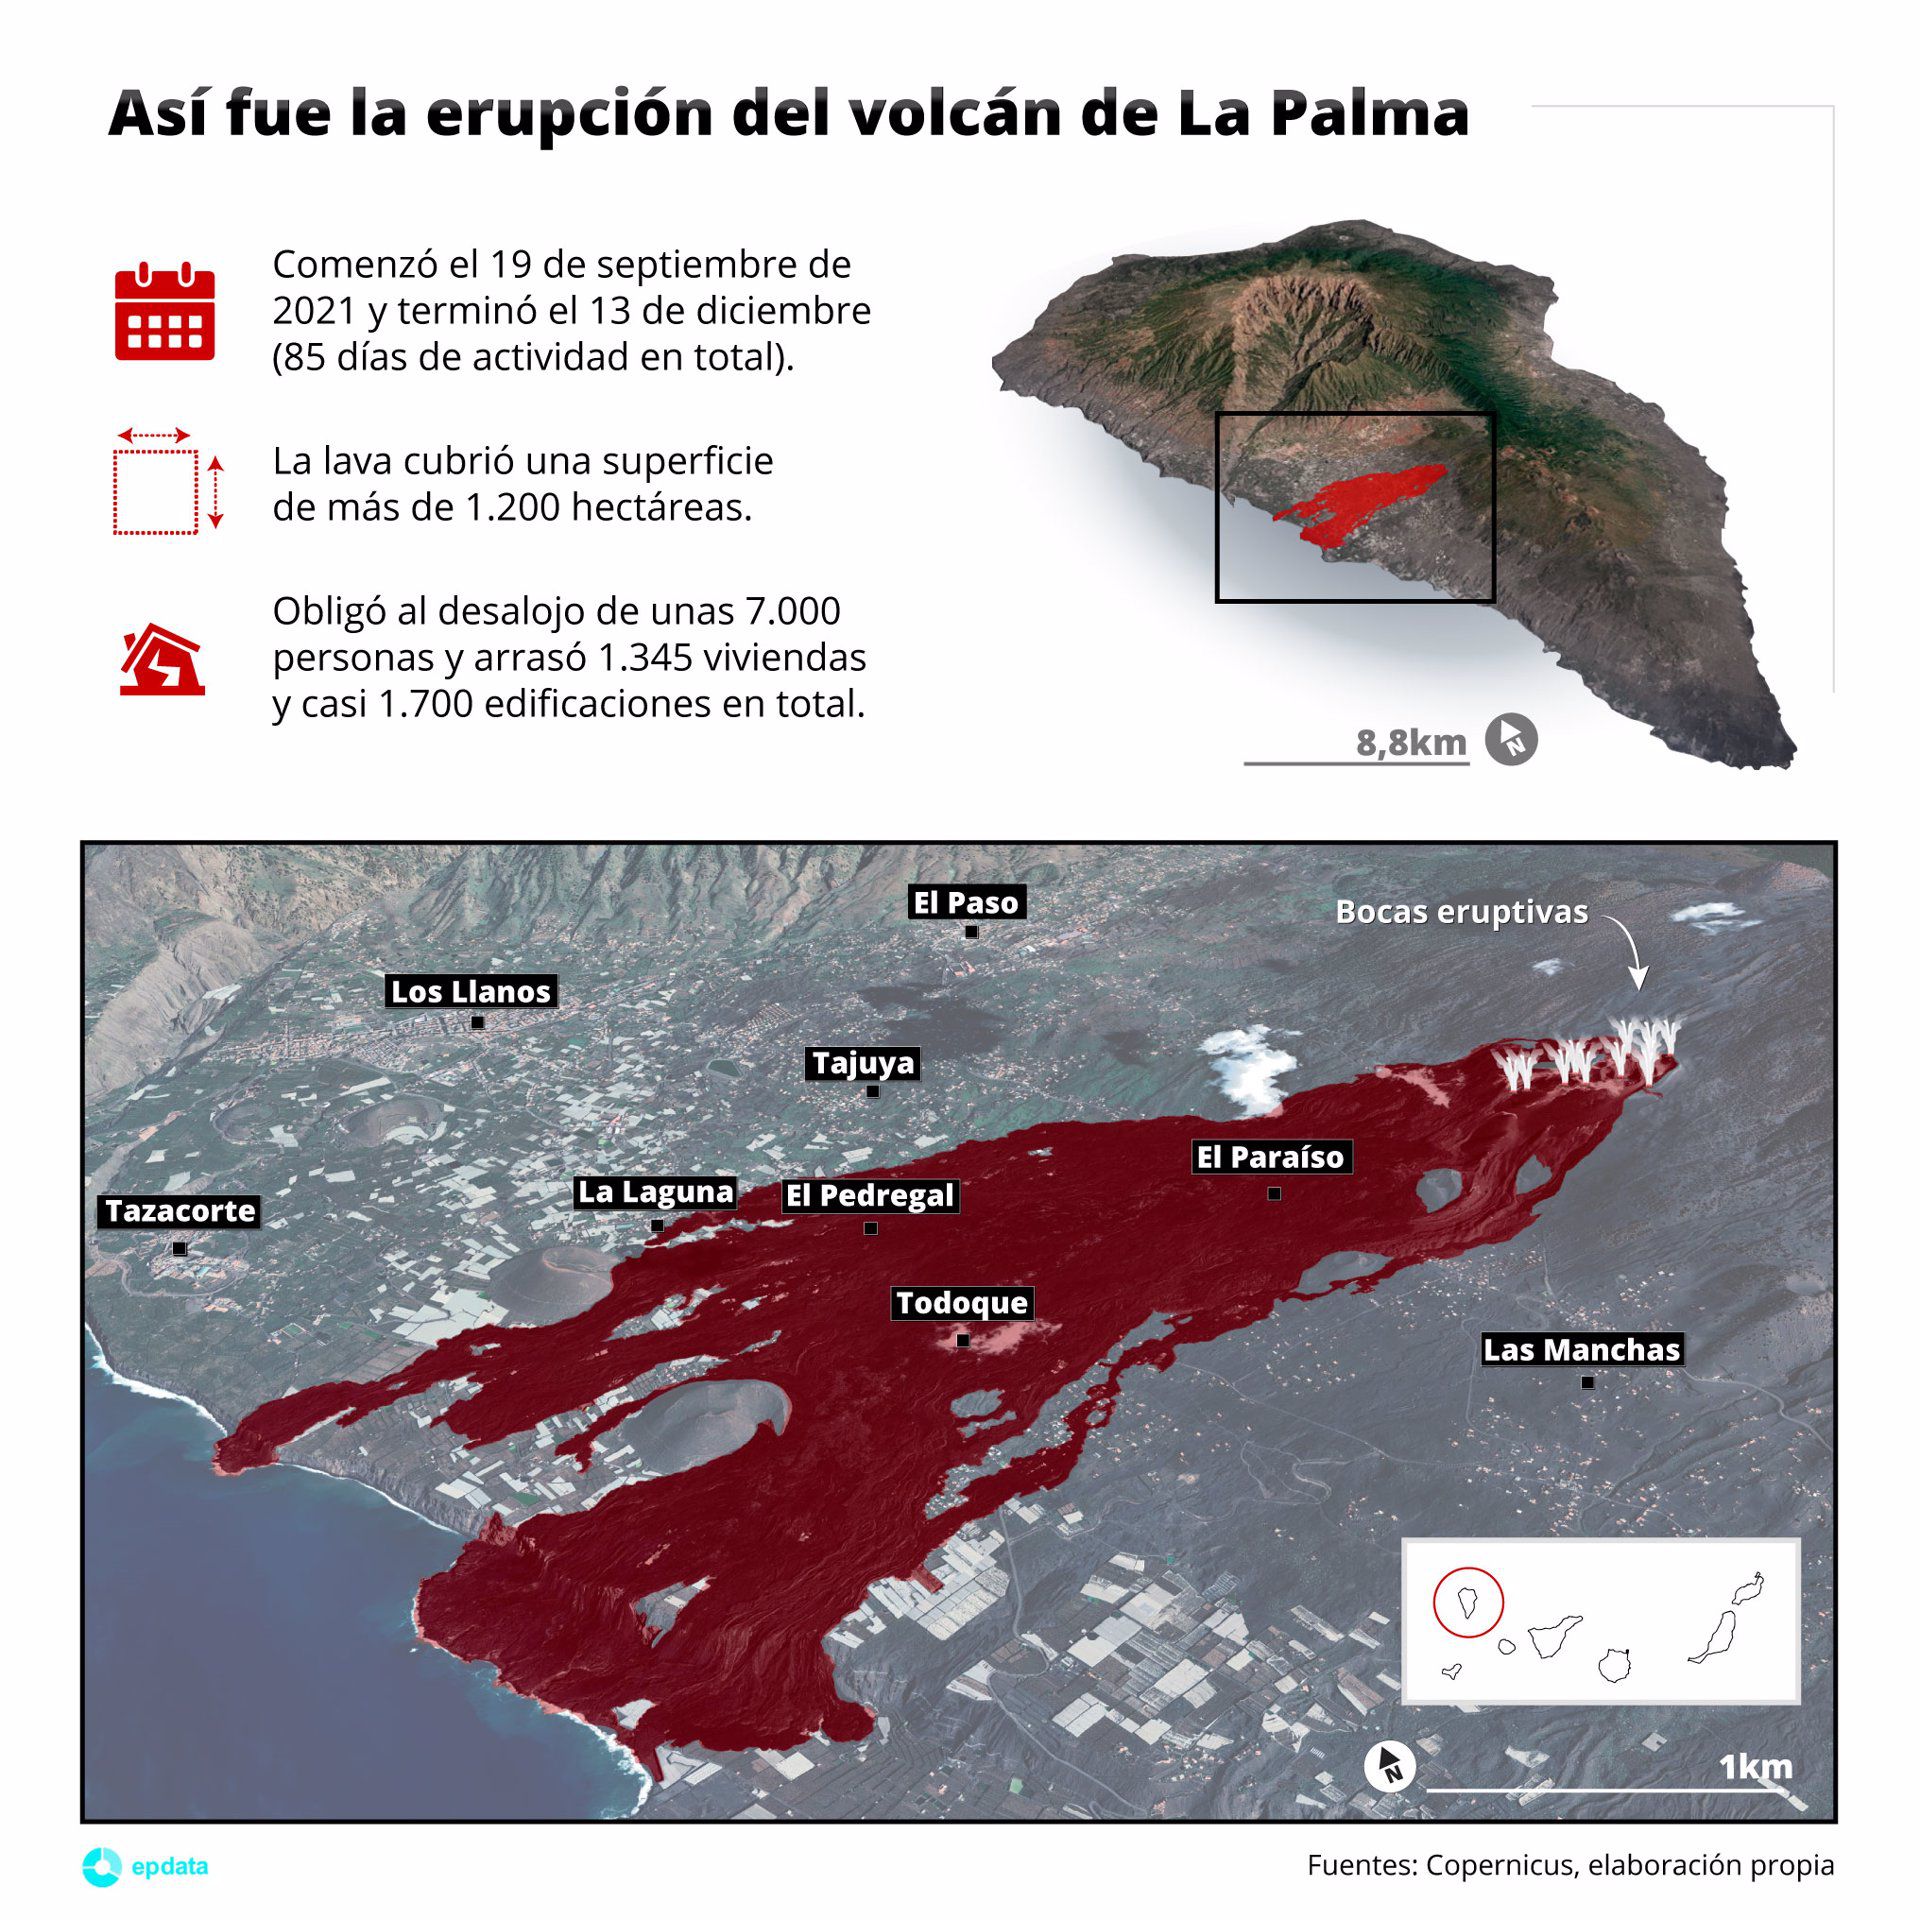 La UE aprueba una ayuda de 9,5 millones por los daños del volcán en La Palma, de los que España recibió ya 5,4